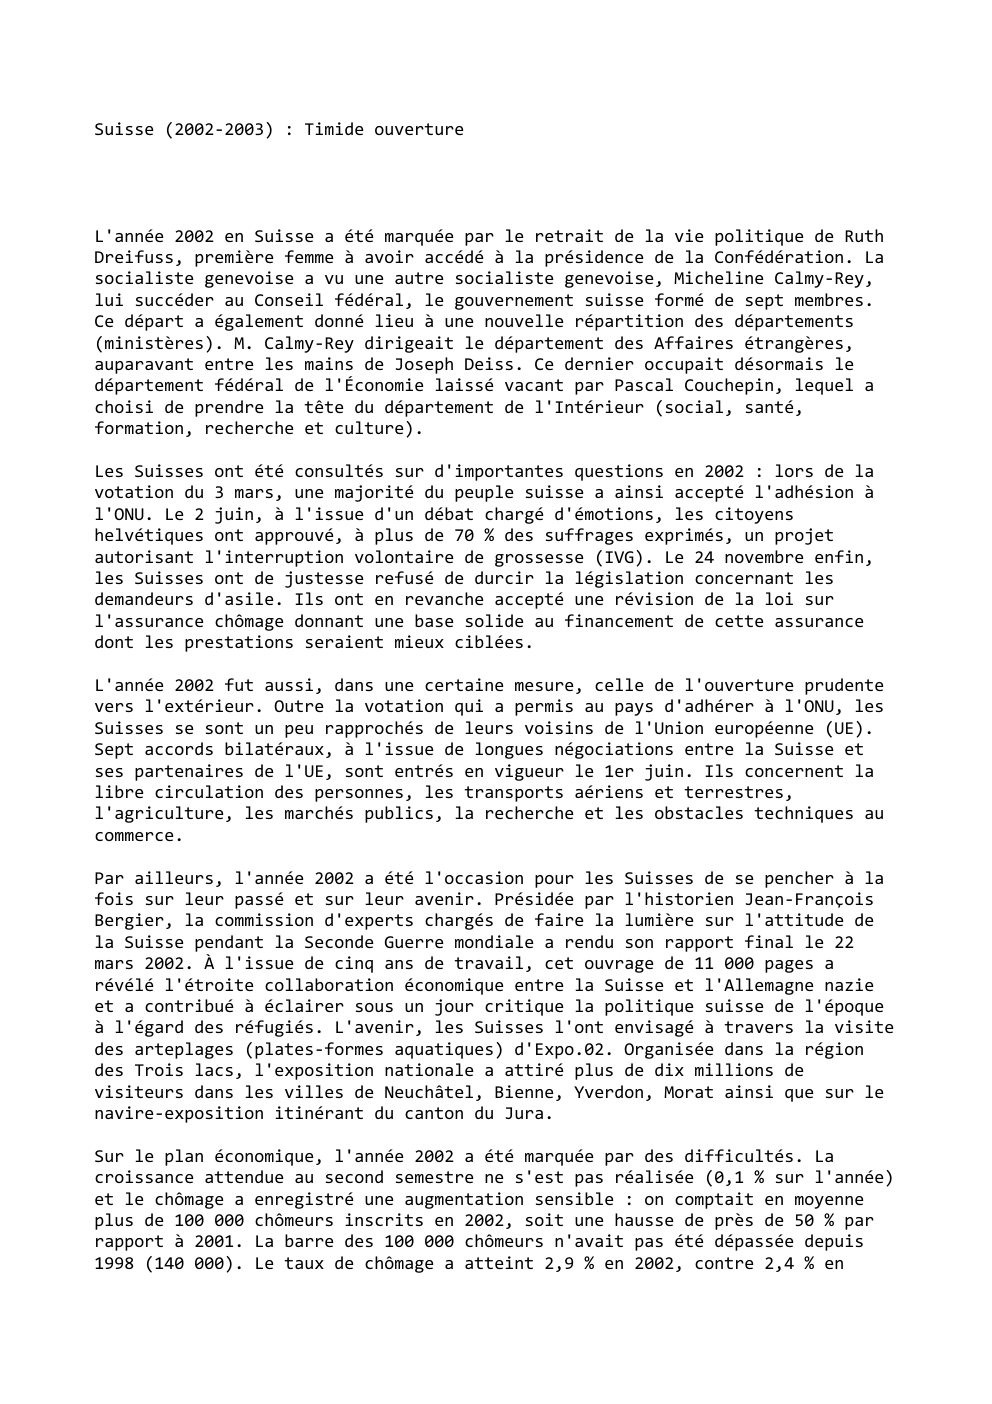 Prévisualisation du document Suisse (2002-2003) : Timide ouverture

L'année 2002 en Suisse a été marquée par le retrait de la vie politique de...